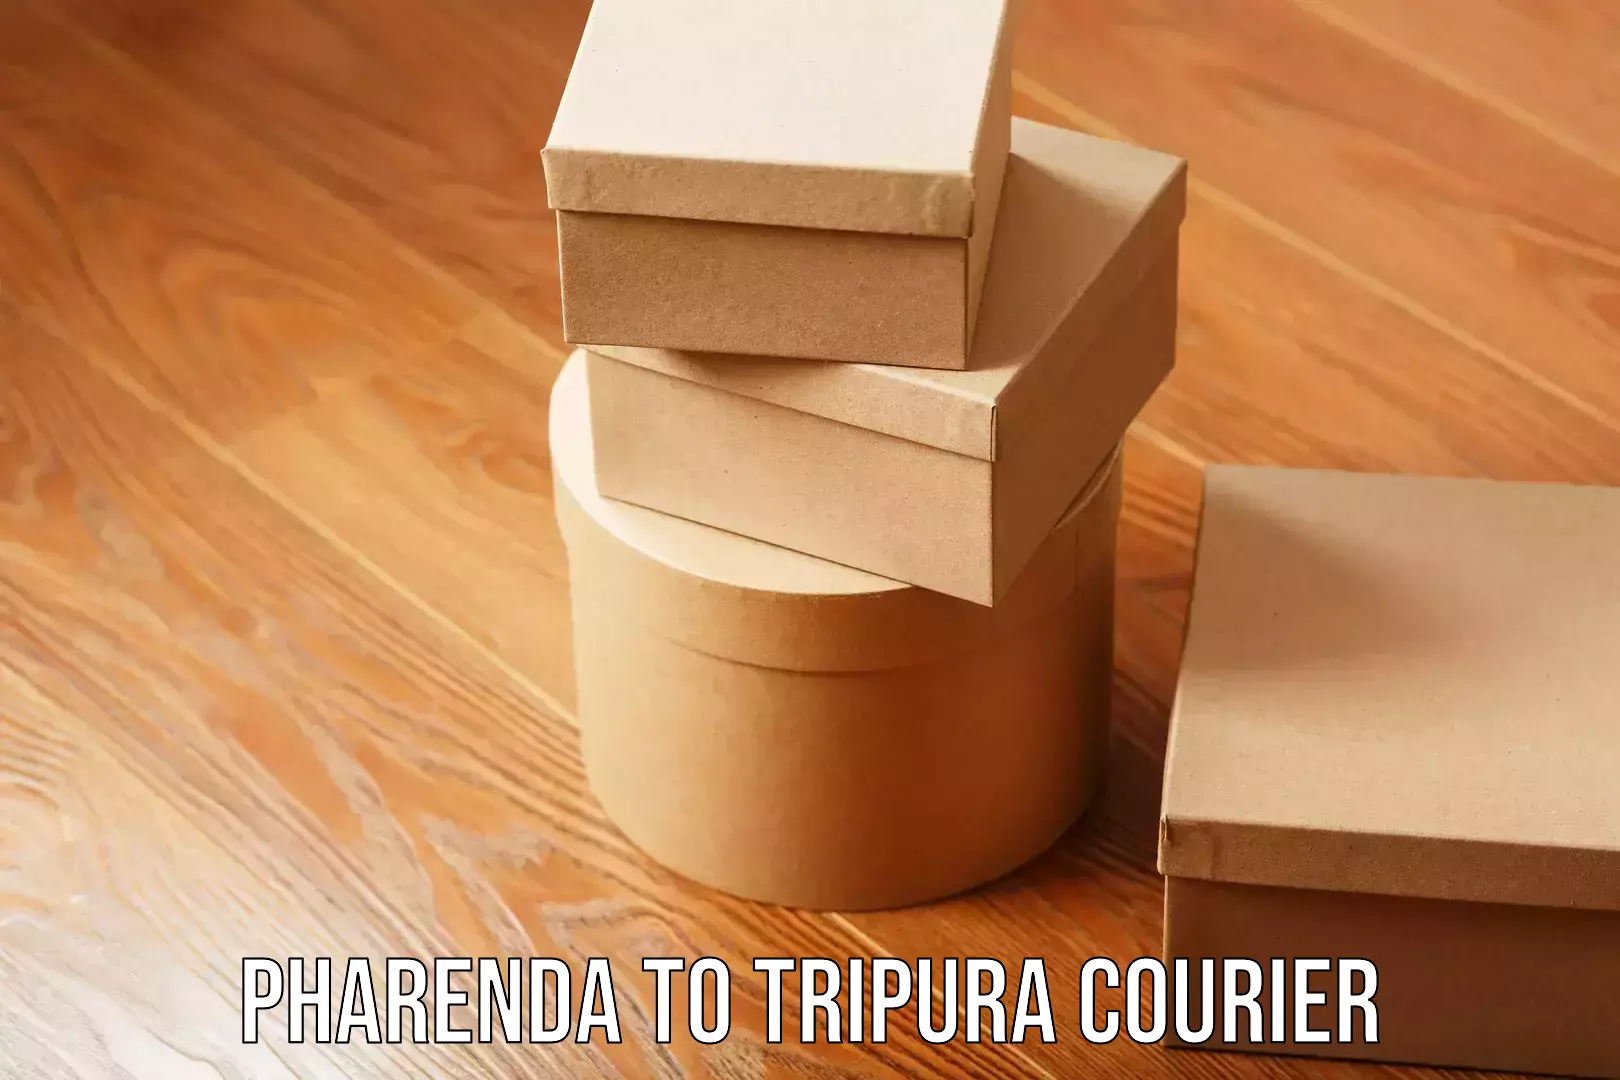 Full-service movers Pharenda to Tripura